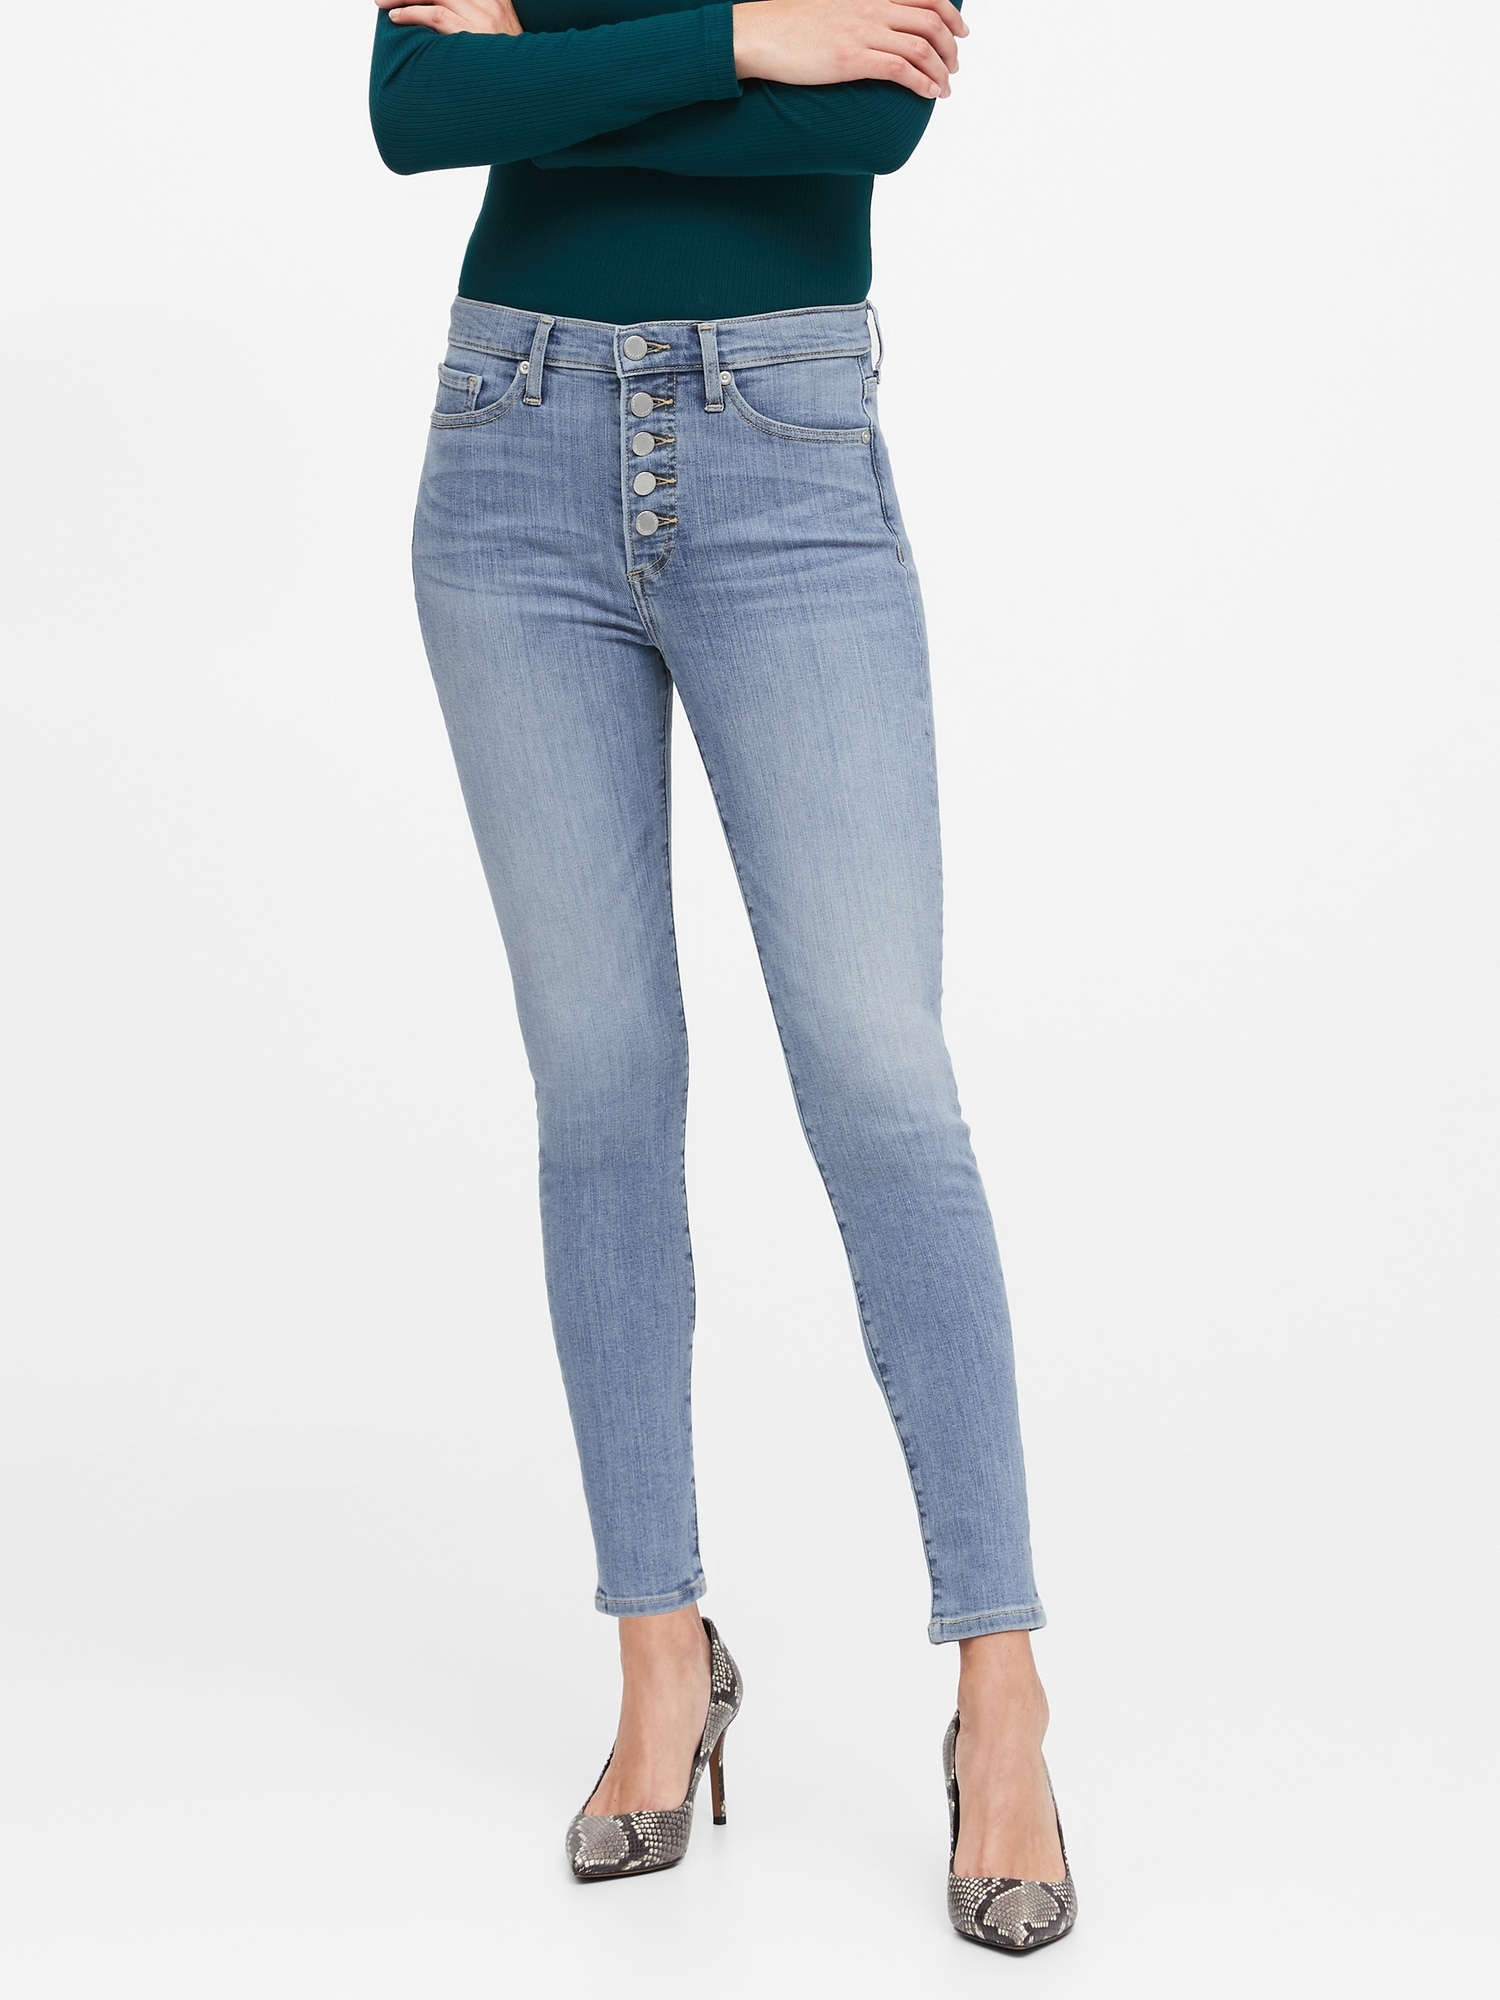 button fly jeans high waist